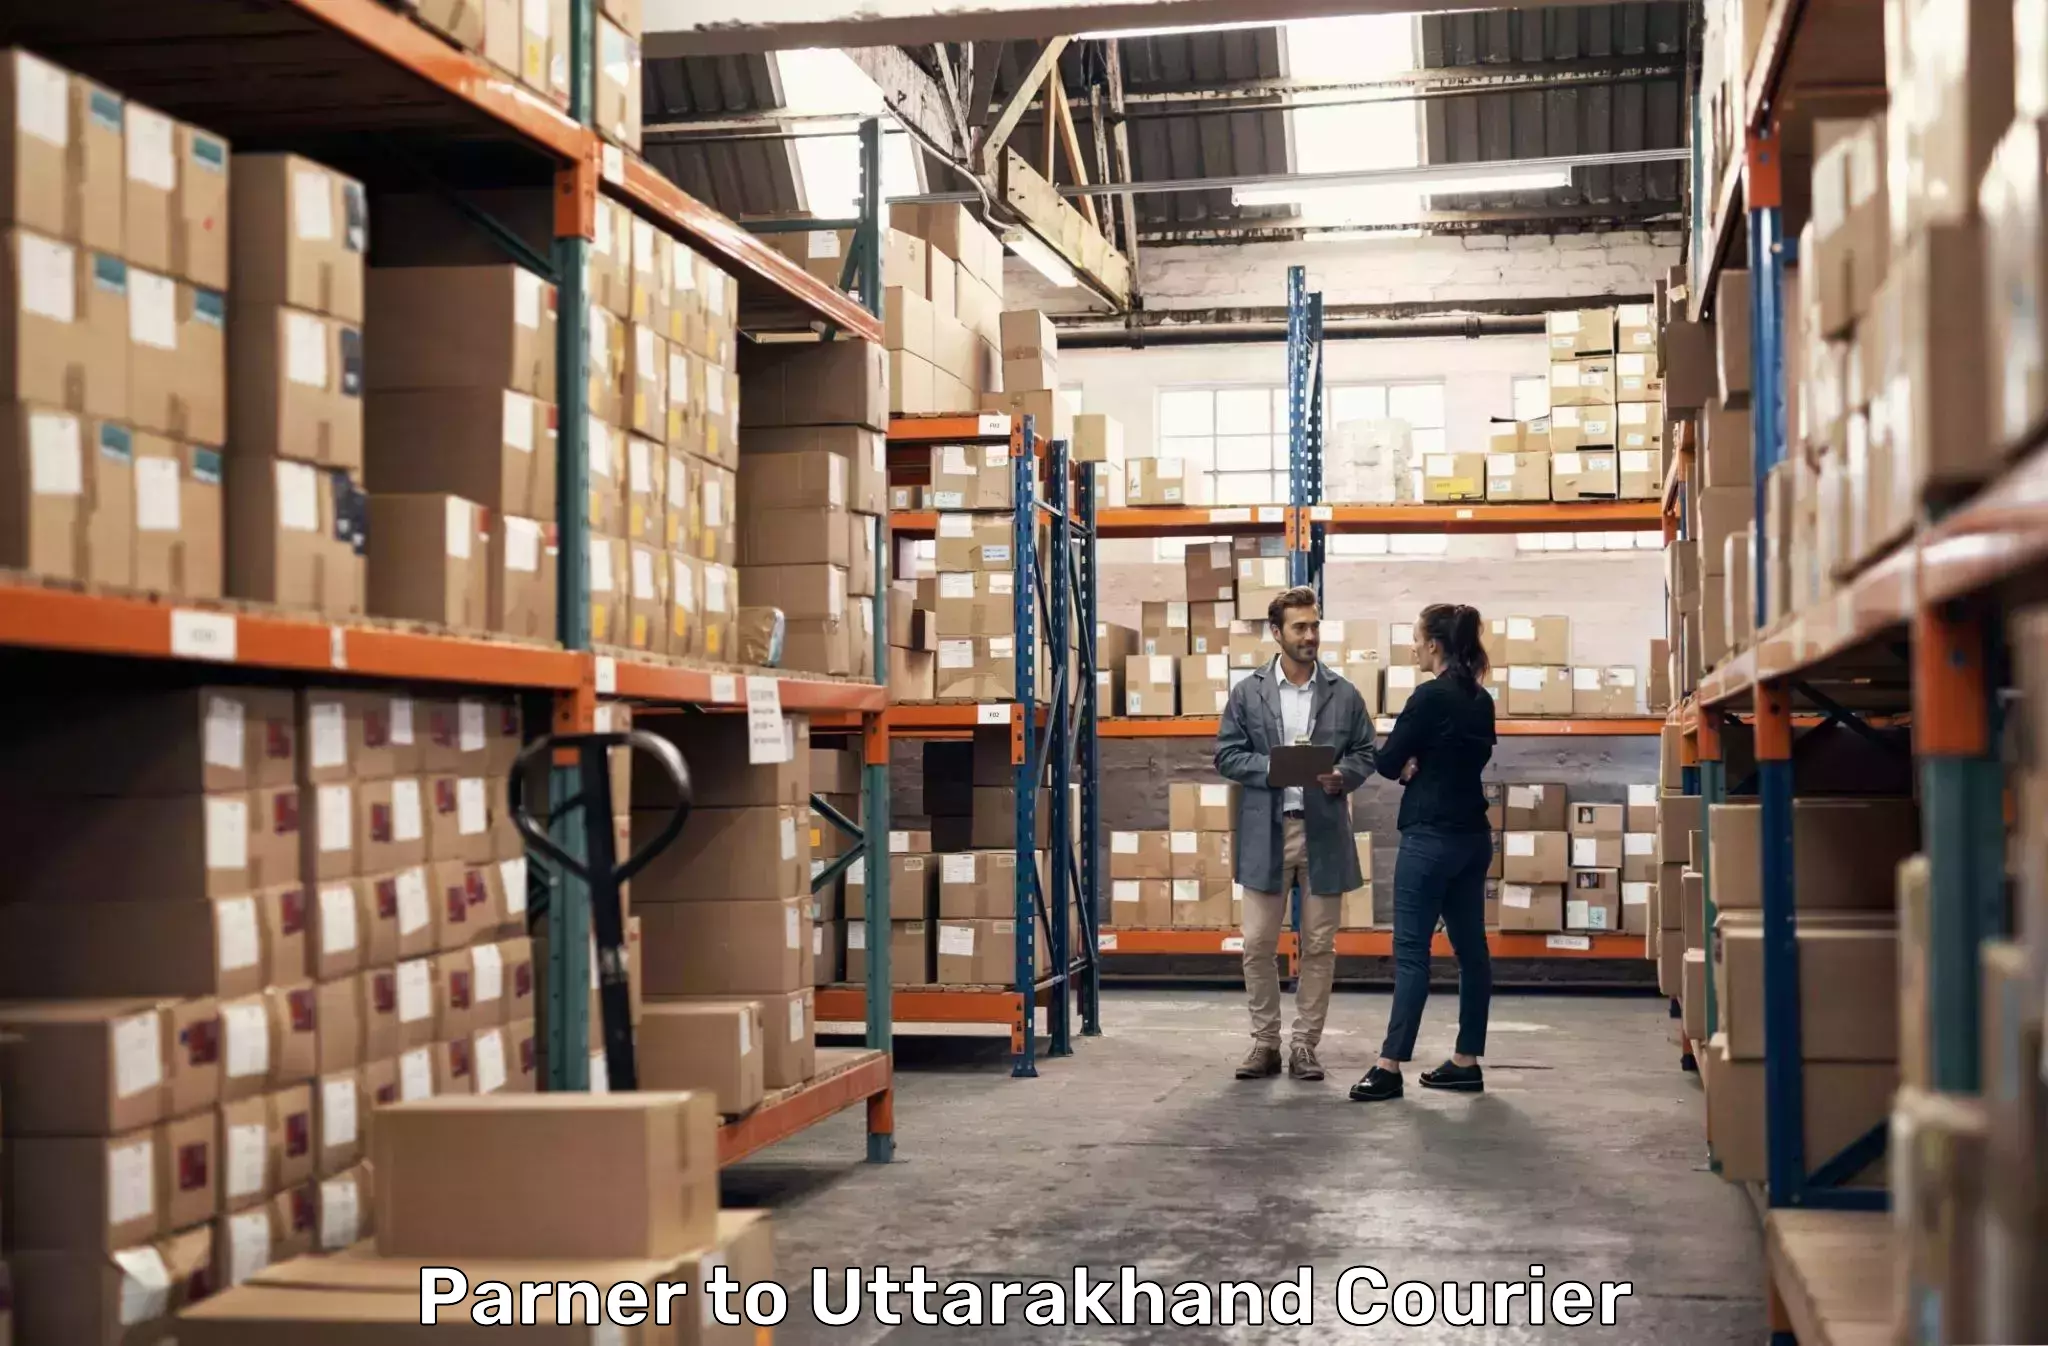 Cargo delivery service Parner to Dehradun